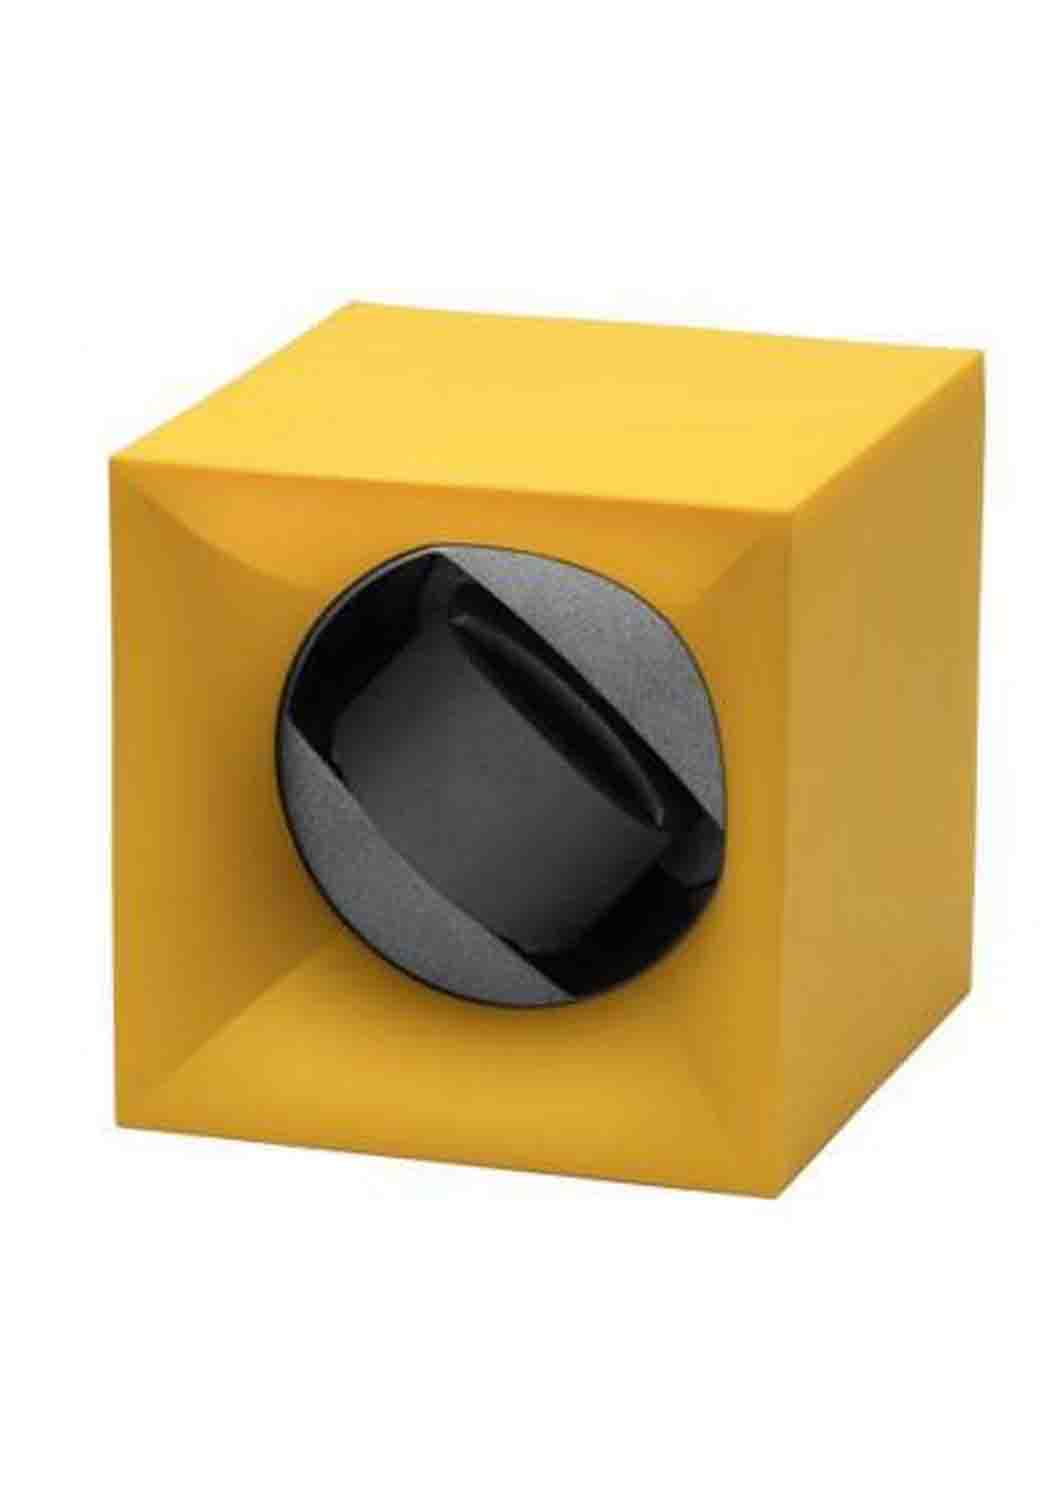 12 Kubik Single Watch Winder Box Yellow